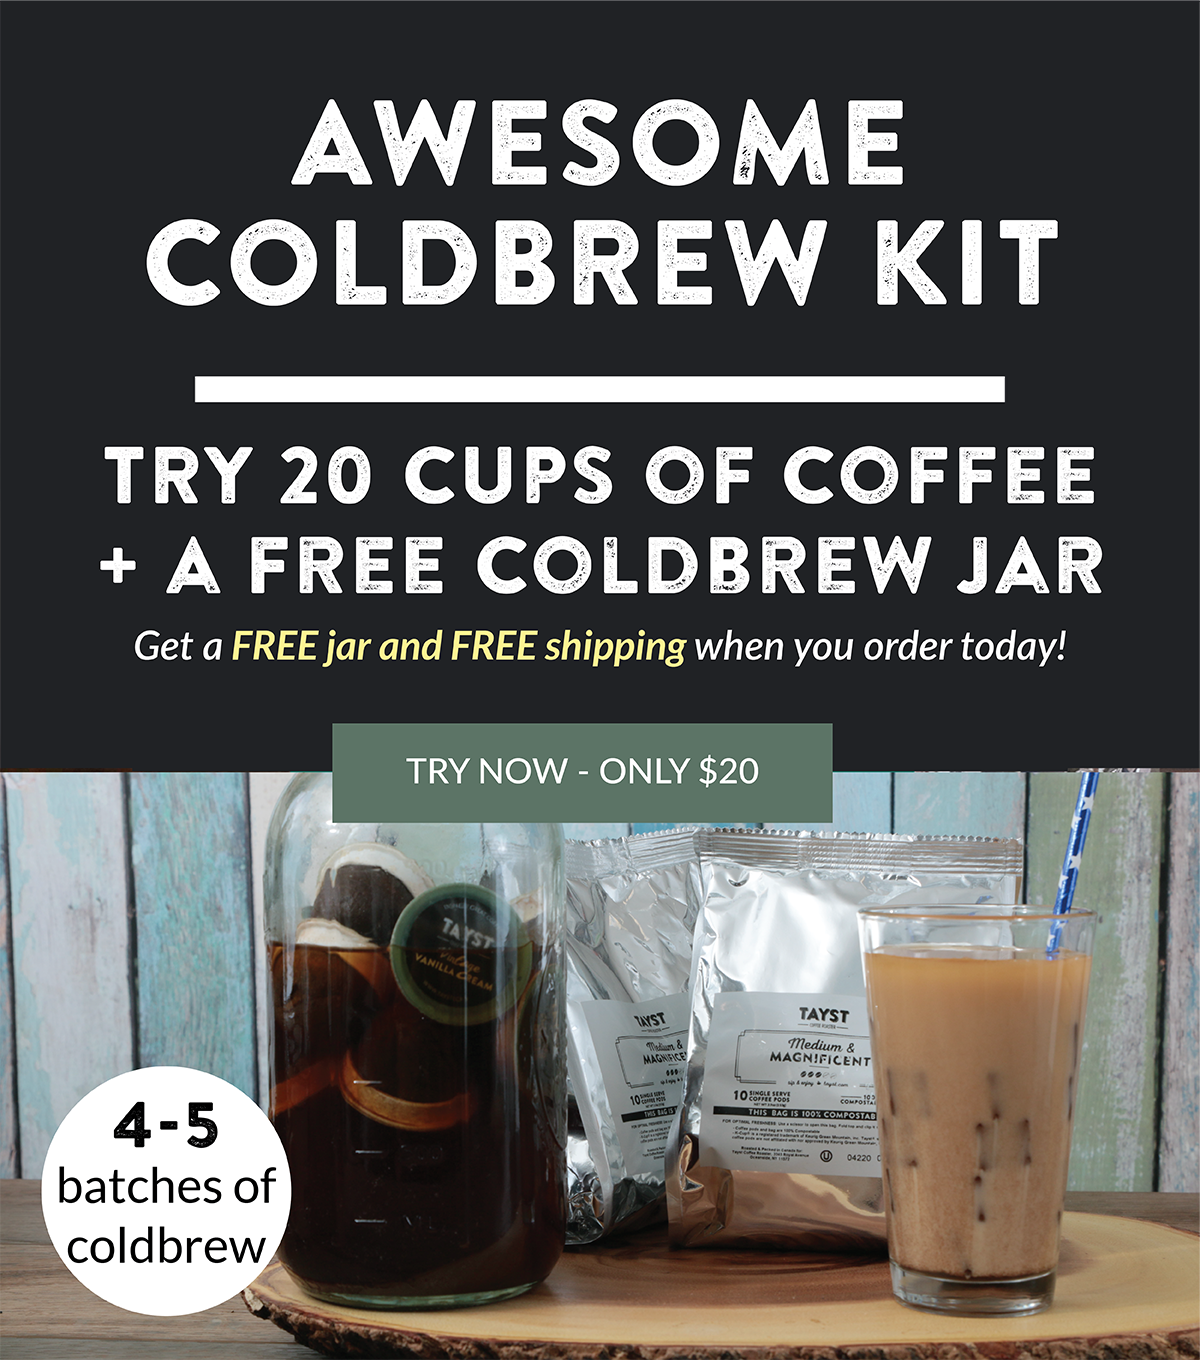 Cold Brew Starter Kit